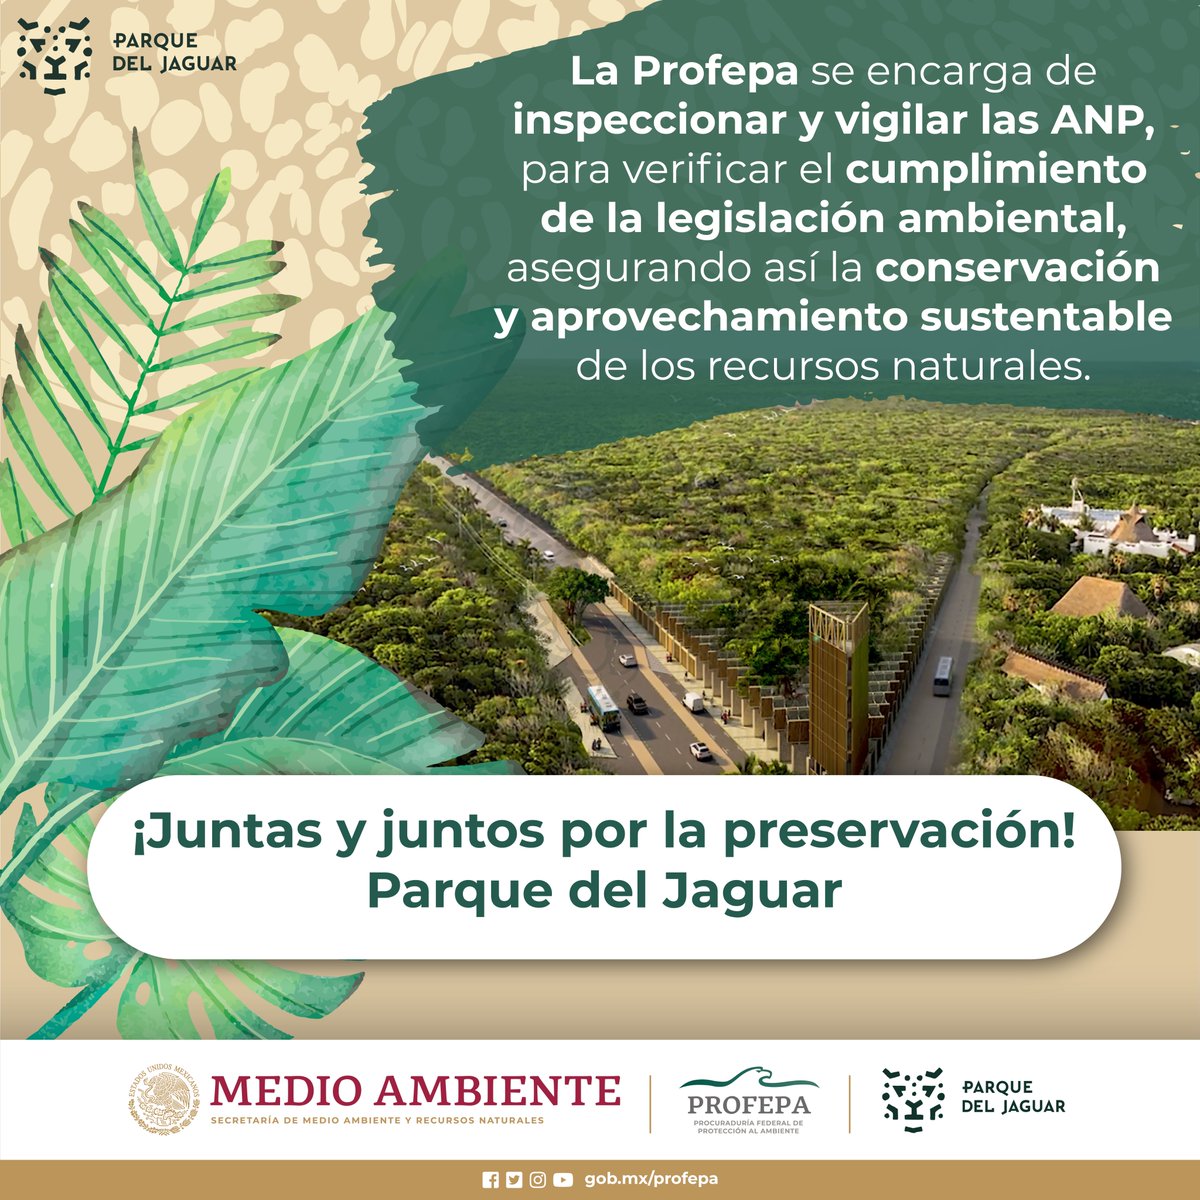 🌿🦜 La @PROFEPA_Mx está comprometida con la #ProtecciónAmbiental y la conservación de las especies que habitan en el #ParqueDelJaguar. 

¡Juntos lograremos un futuro más sustentable! 🌳🐆🦜